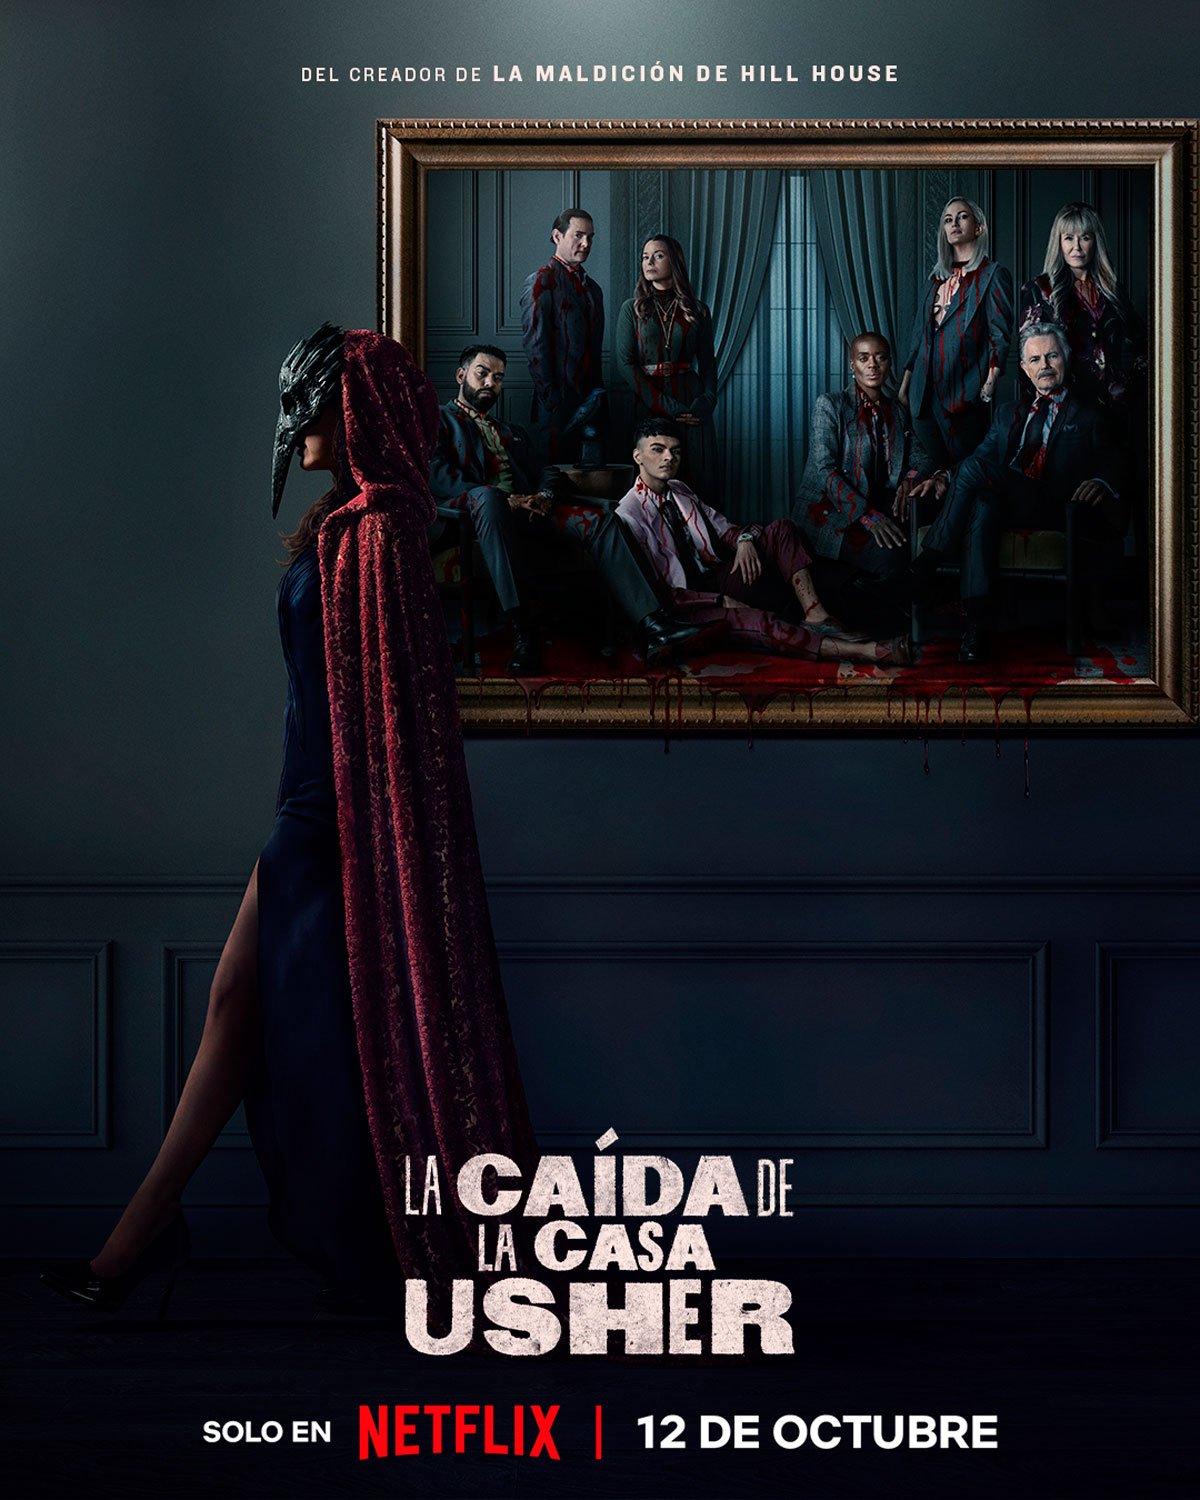 La caída de la casa Usher - La serie de televisión de Edgar Allan Poe